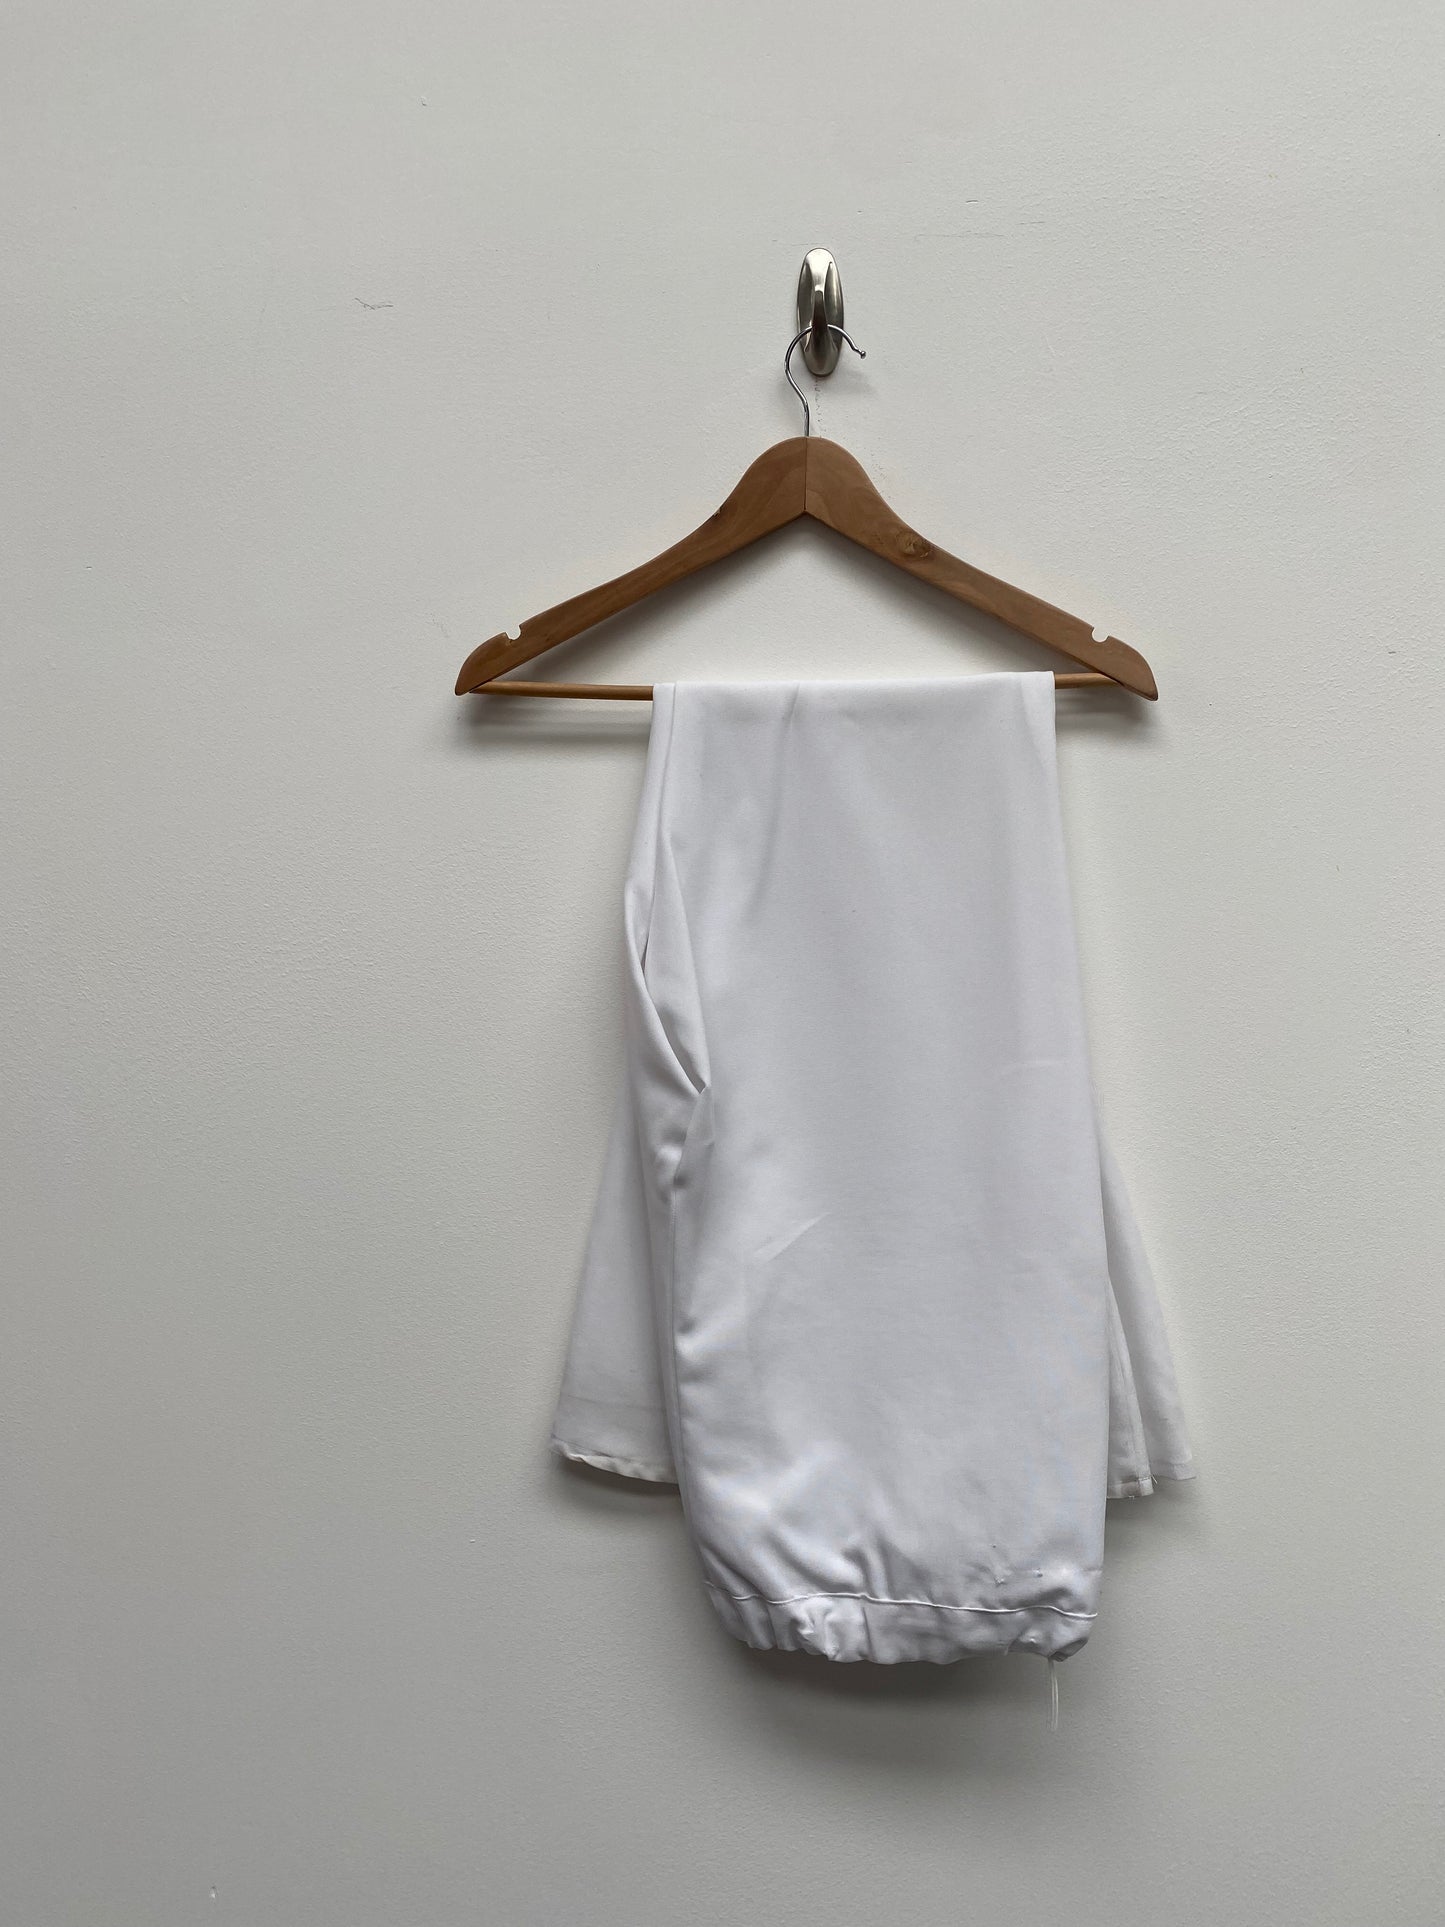 70s Men's White Suit Size Medium - Ex Hire Fancy Dress Costume